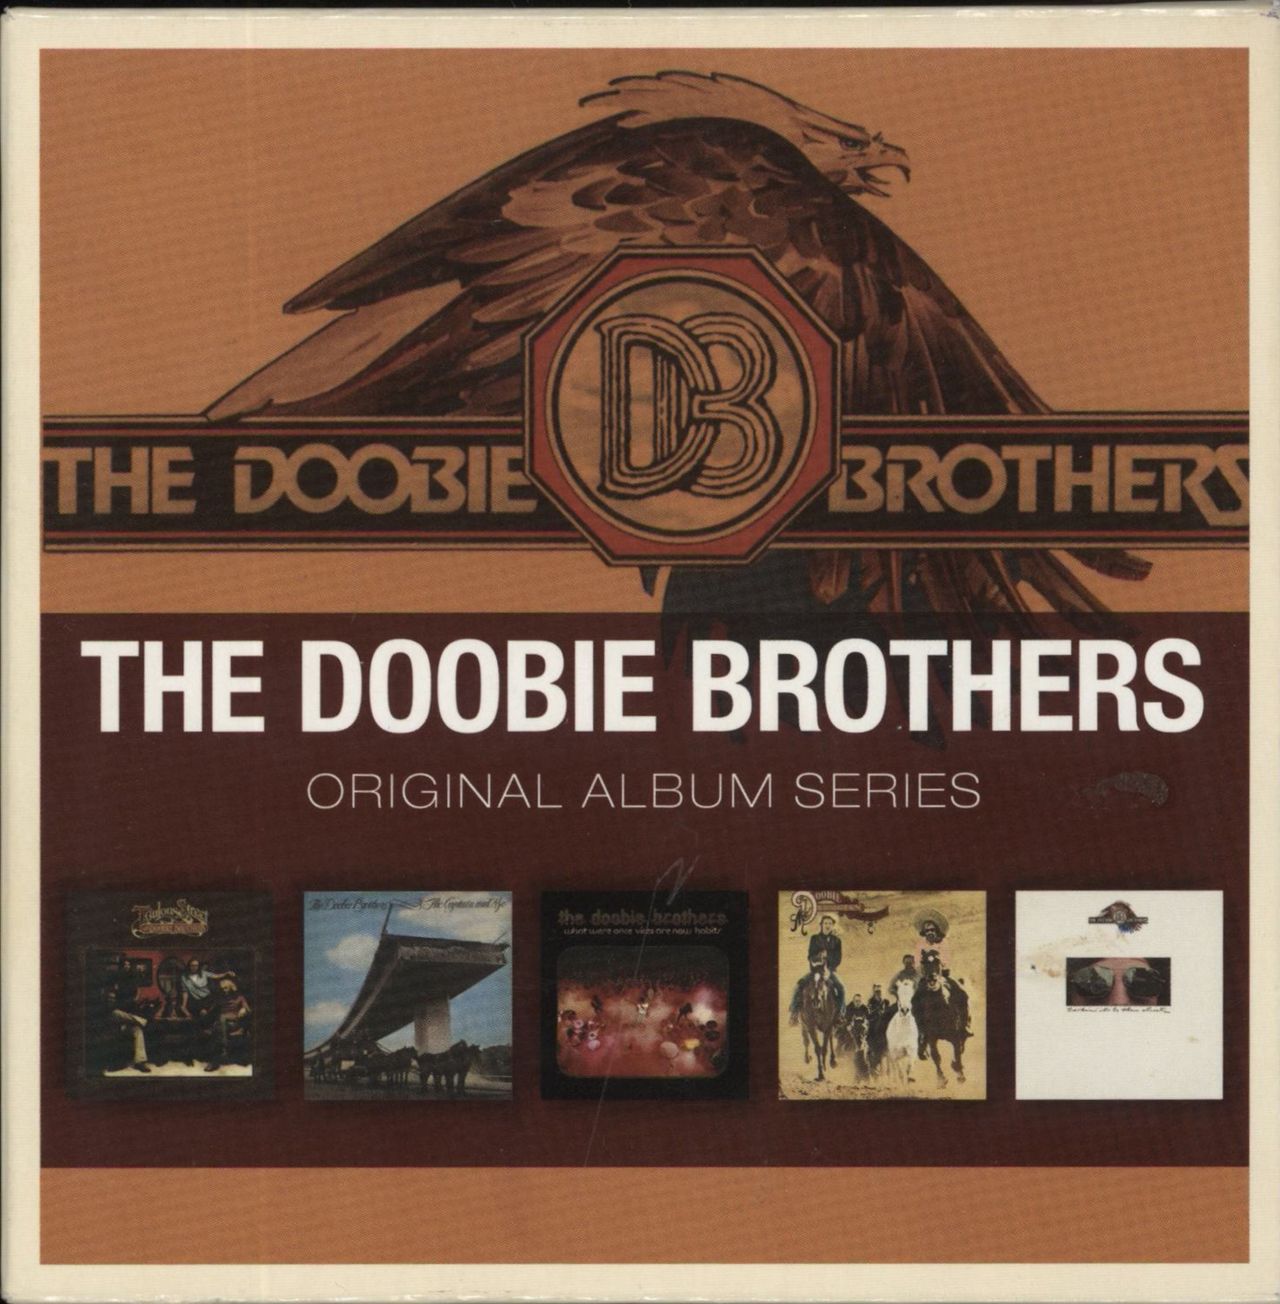 The Doobie Brothers Original Album Series UK Cd album box set